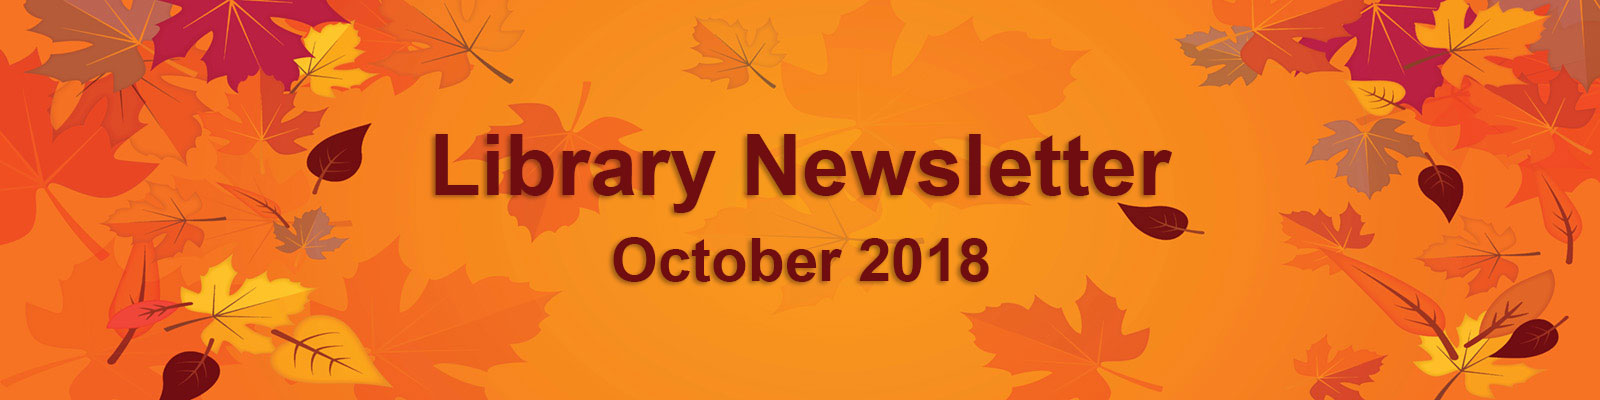 2108 October Newsletter leaves banner